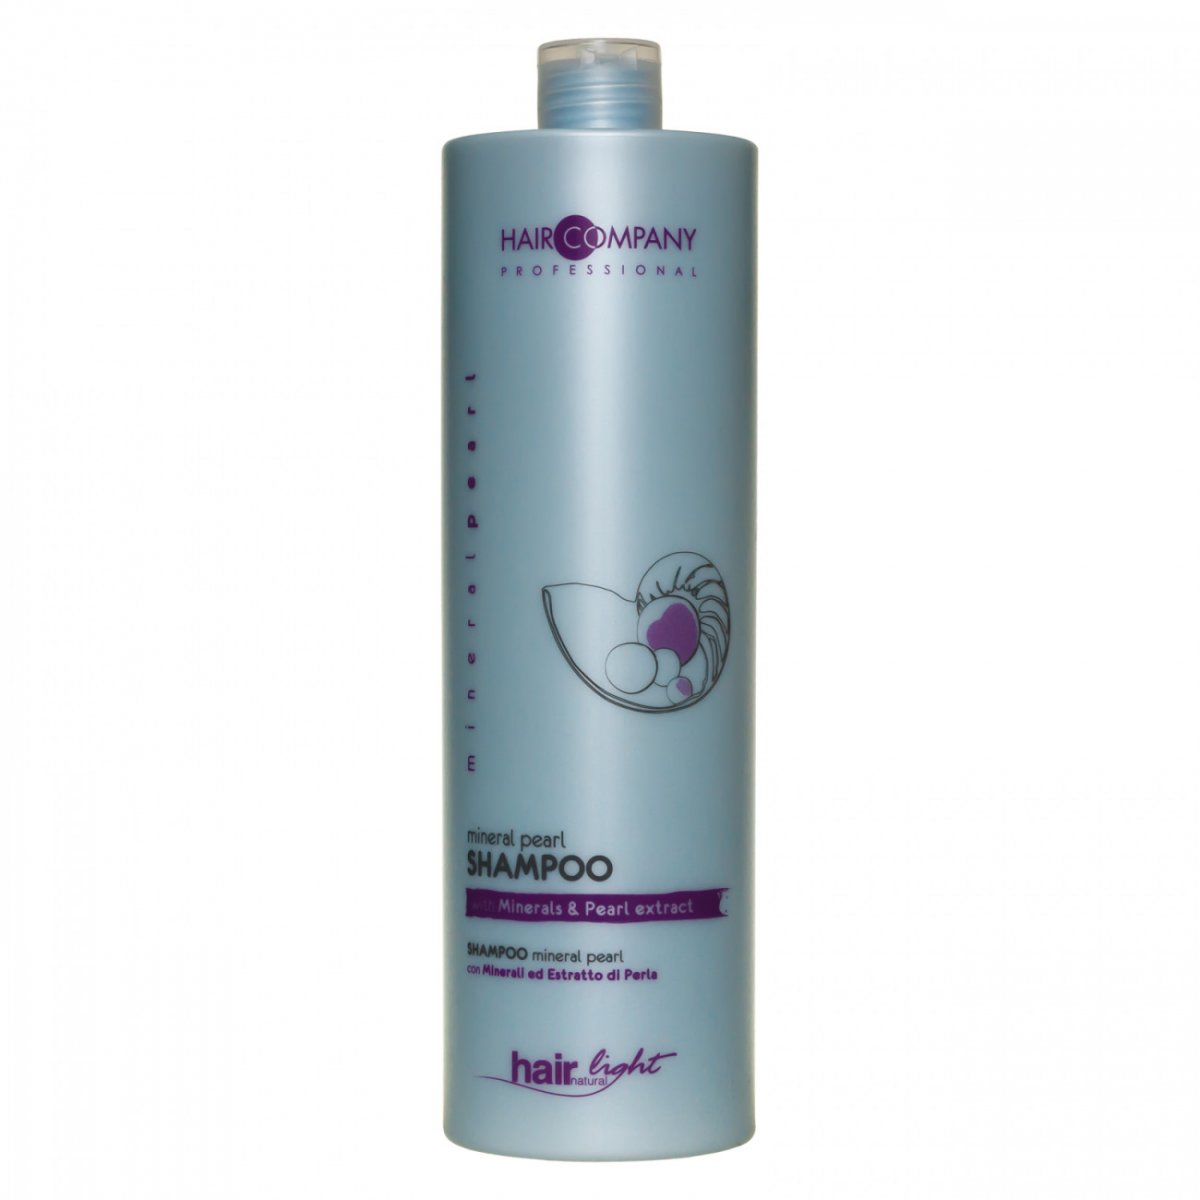 Купить Hair Company Professional Light Mineral Pearl Shampoo - Шампунь для волос с минералами и экстрактом жемчуга 1000 мл, Hair Company Professional (Италия)